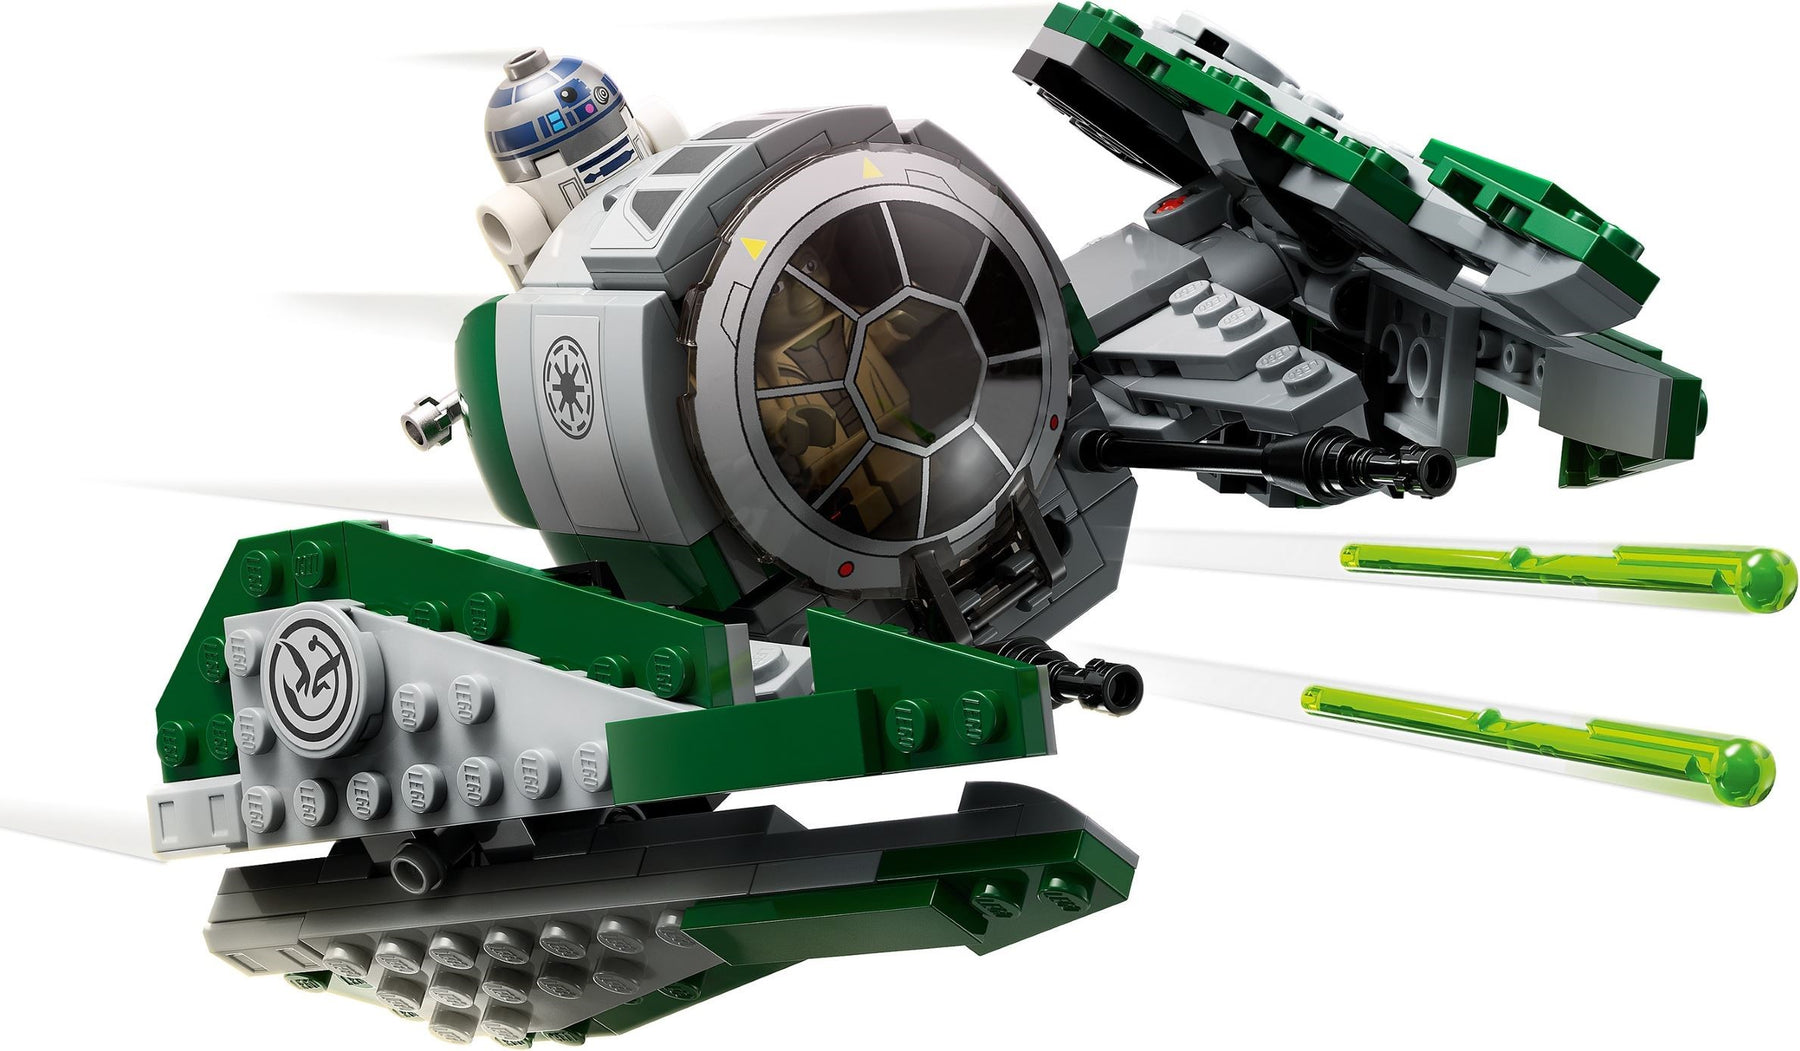 LEGO Star Wars 75360 Yodan Jedi Sarfighter